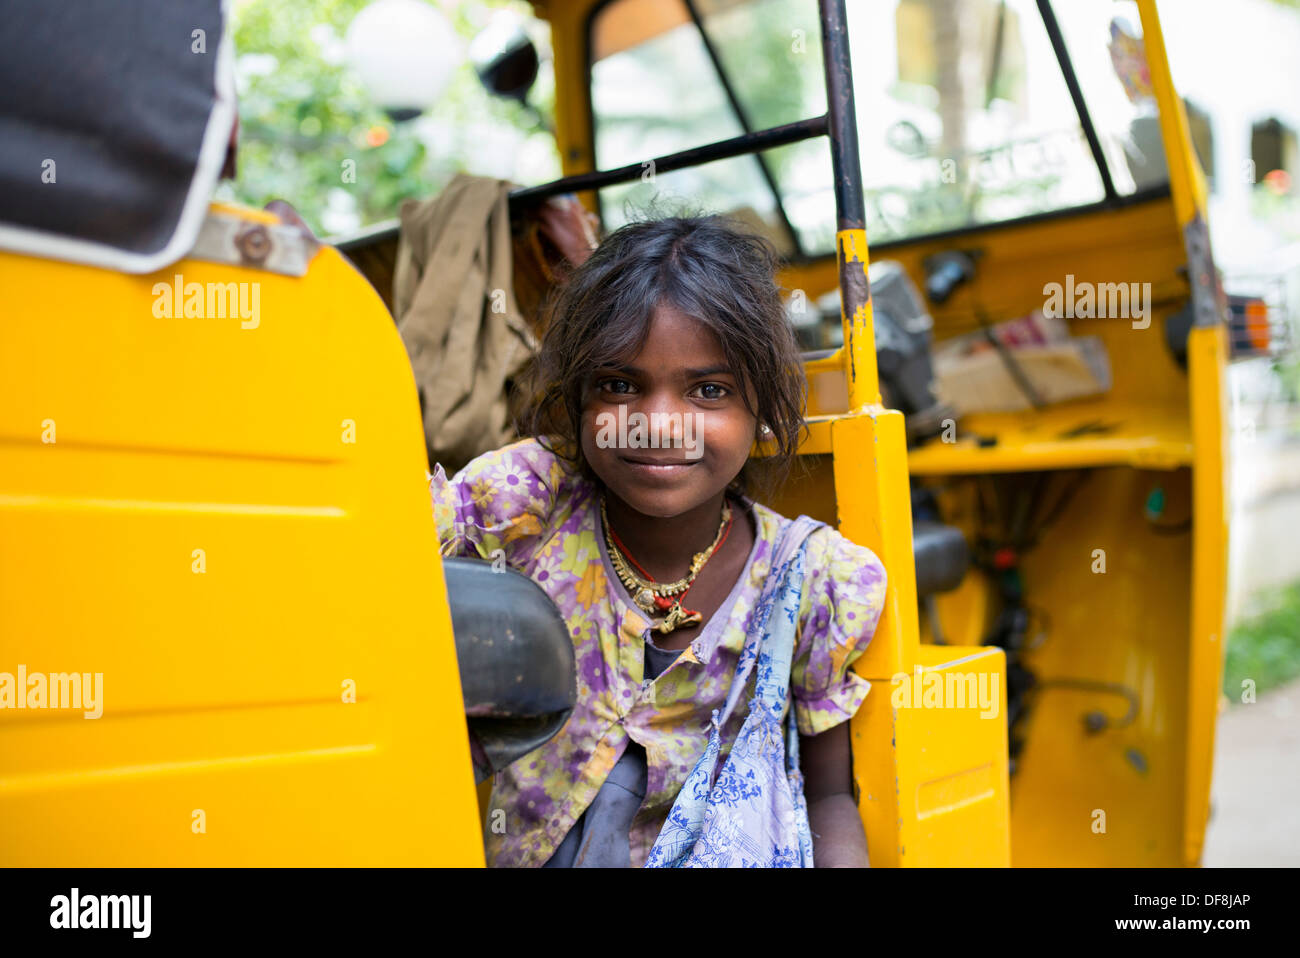 Armes Mädchen glücklich indischen Straße in einer Rikscha. Andhra Pradesh, Indien. Selektiven Fokus. Stockfoto